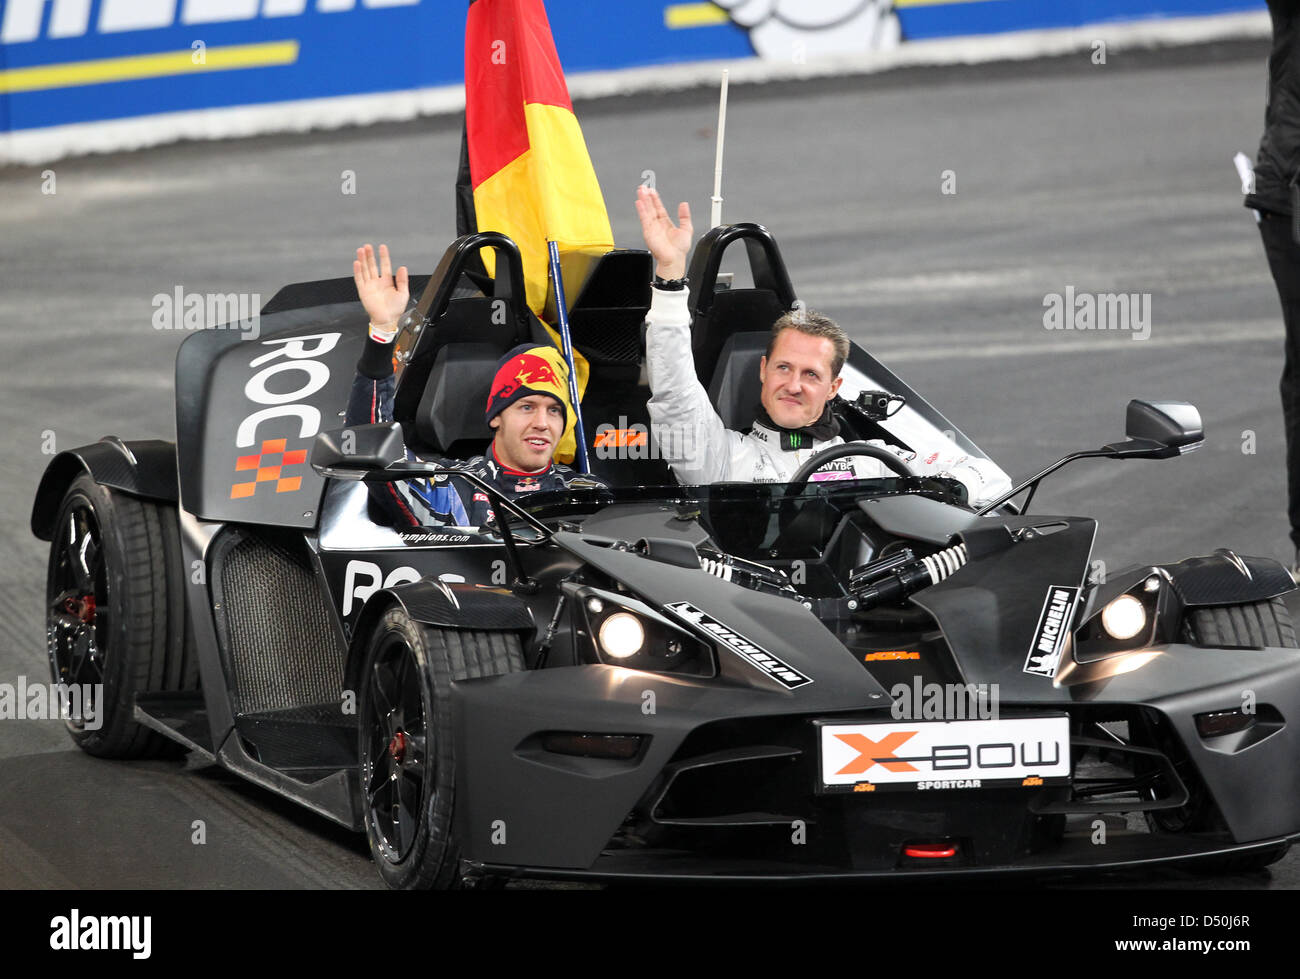 Carrera de Campeones (RoC) am Samstag (27.11.2010) en der Esprit-Arena en  Düsseldorf: FORMEL 1 Weltmeister Sebastian Vettel (l) und Rekordweltmeister  Michael Schumacher winken vor dem Start des Rennens den Zuschauern zu. Foto: